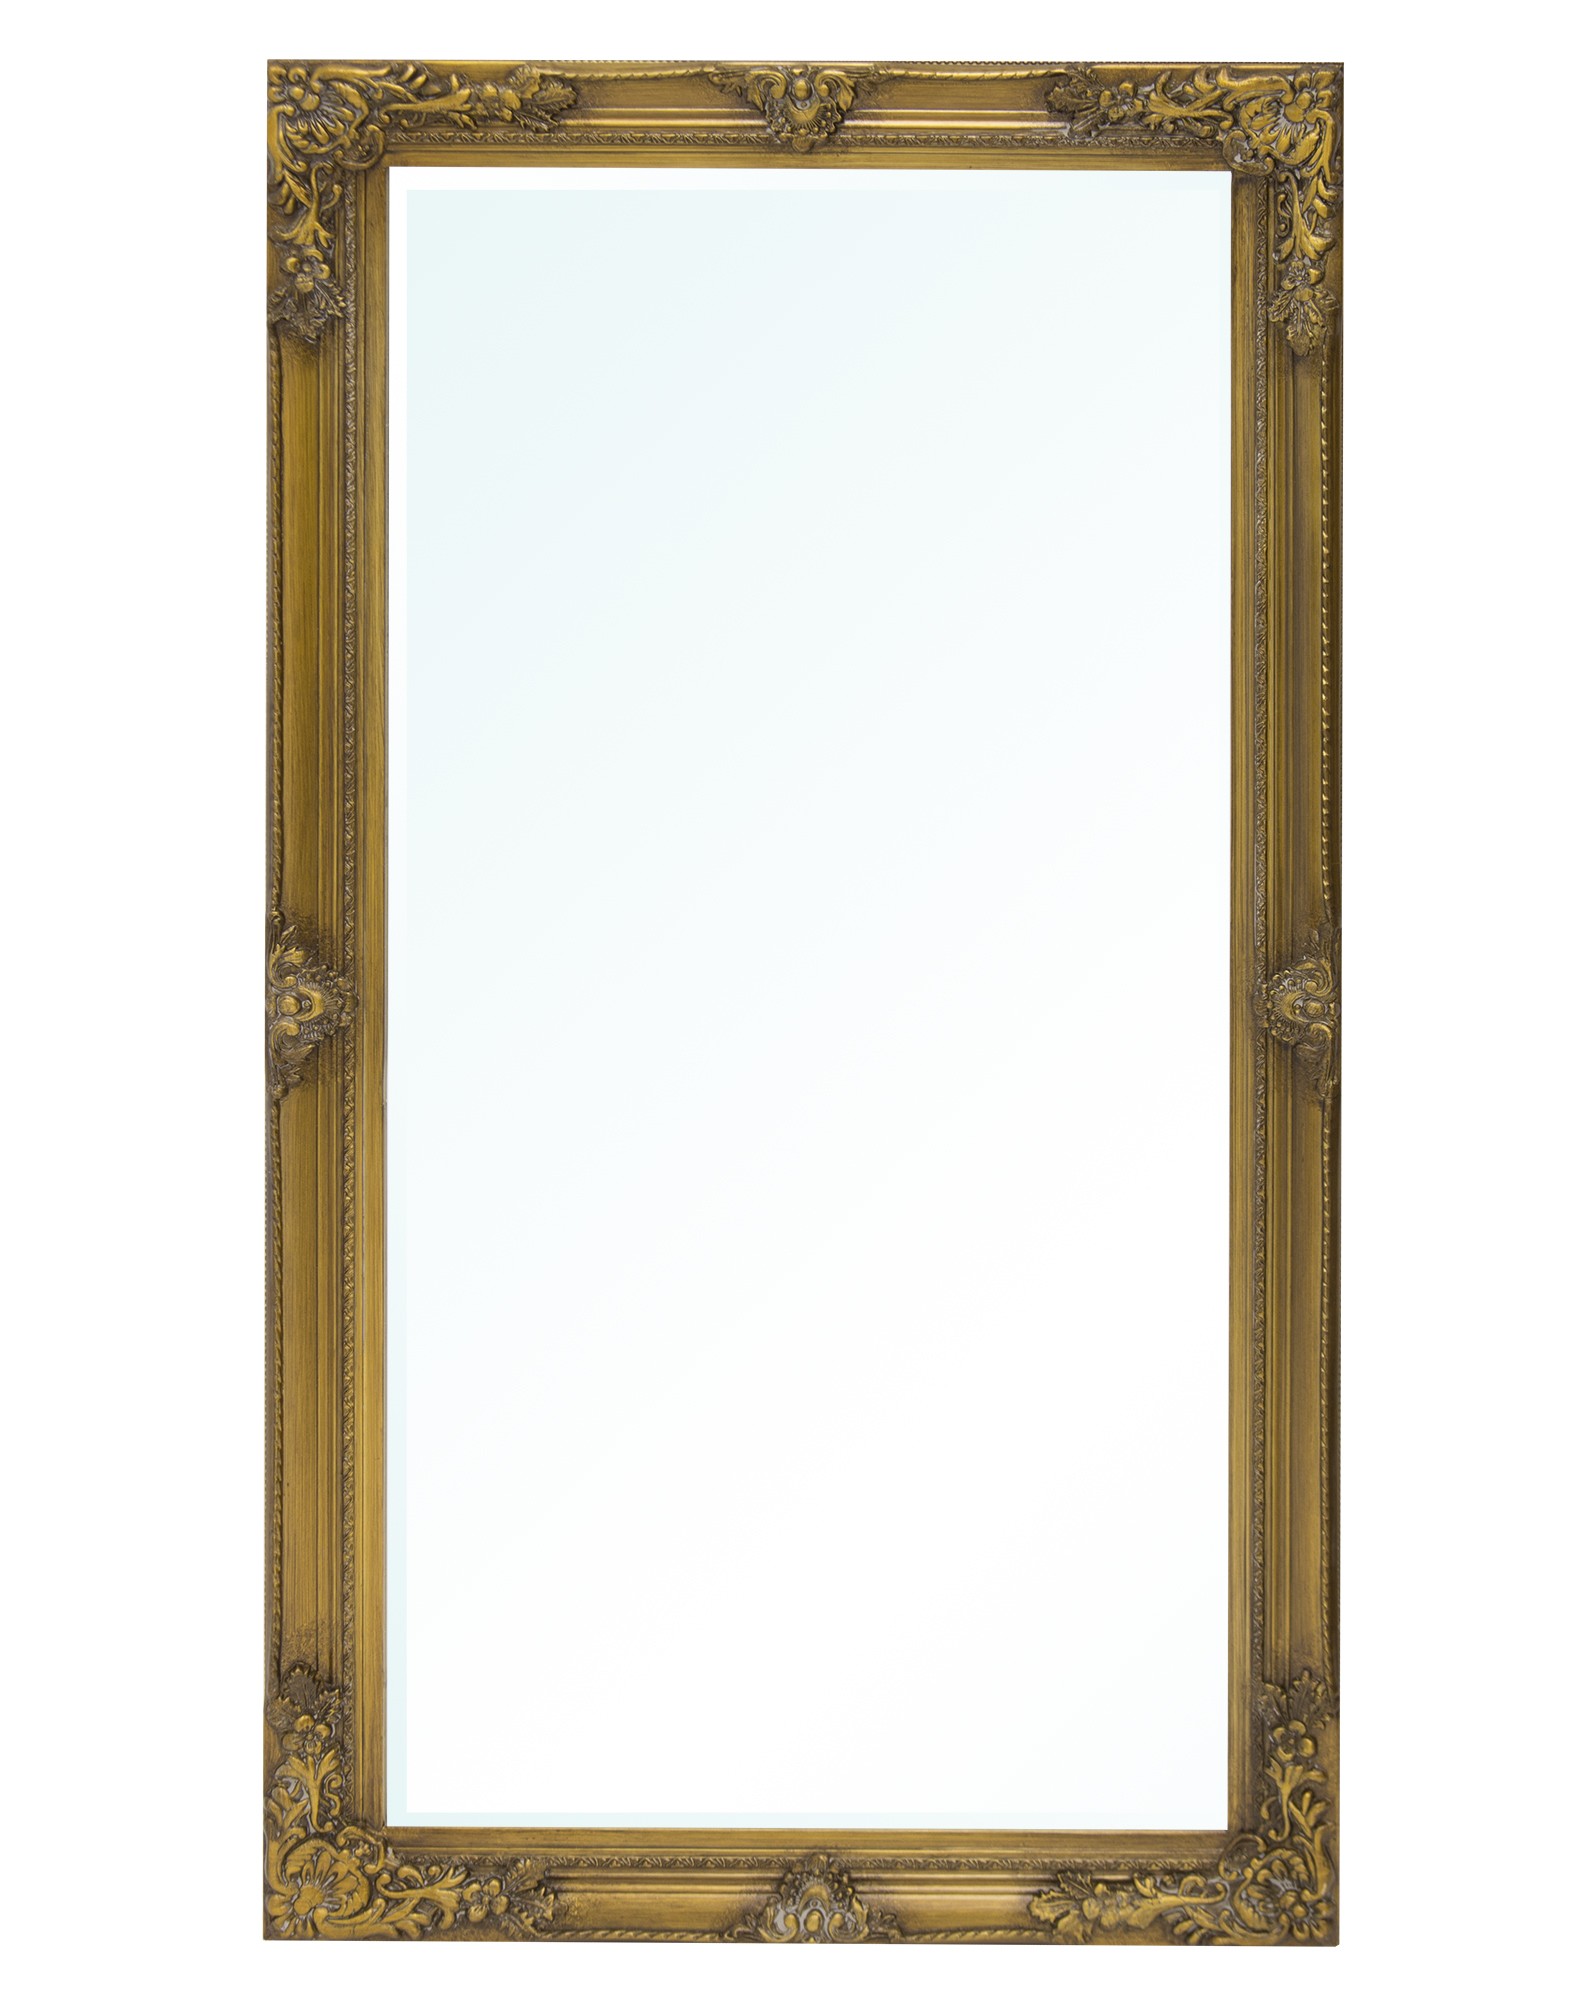 Lustro stylizowane drewno szkło złoty 125596 Art-Pol